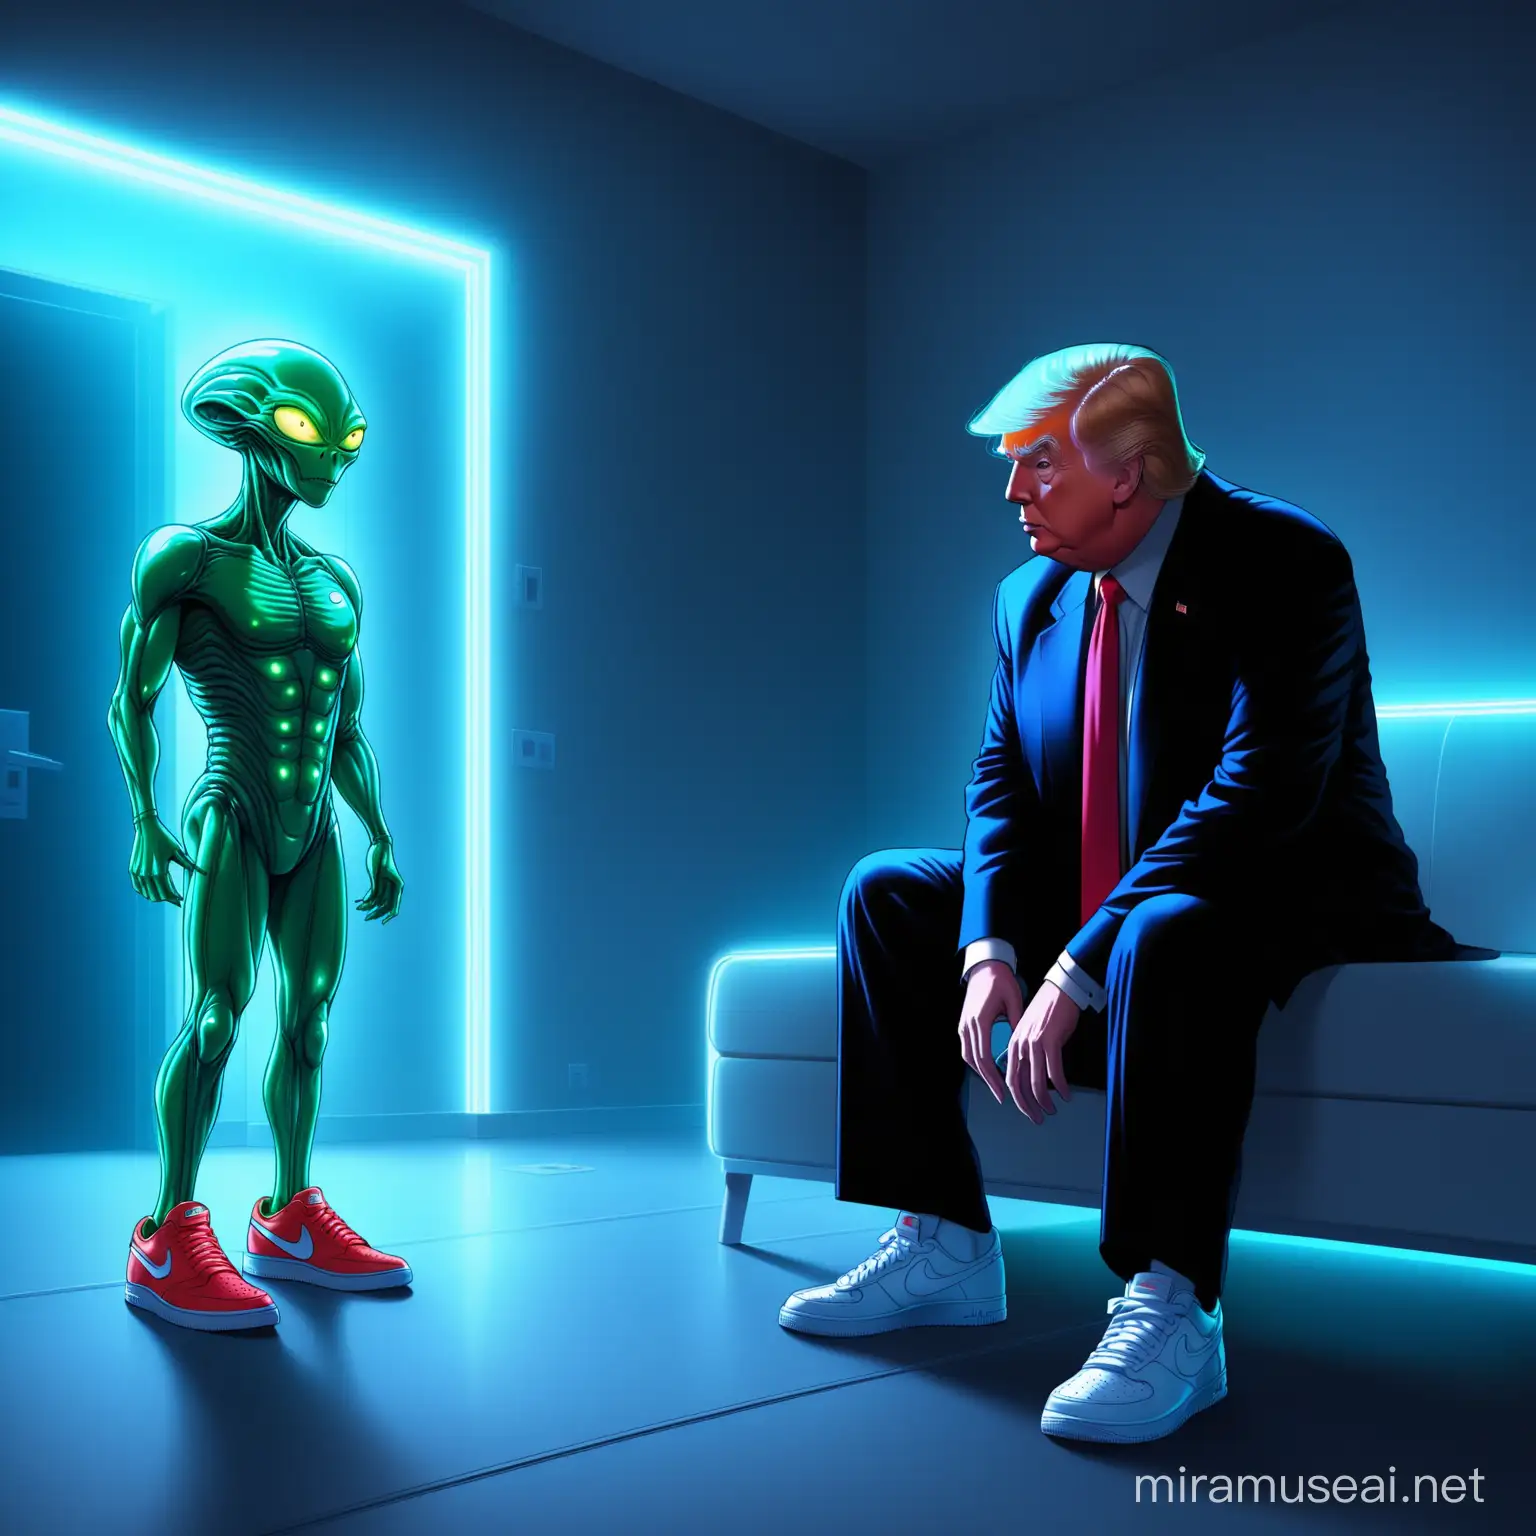 Presidential Encounter Trump in Nike Sneakers meets Alien in NeonLit Modern Space